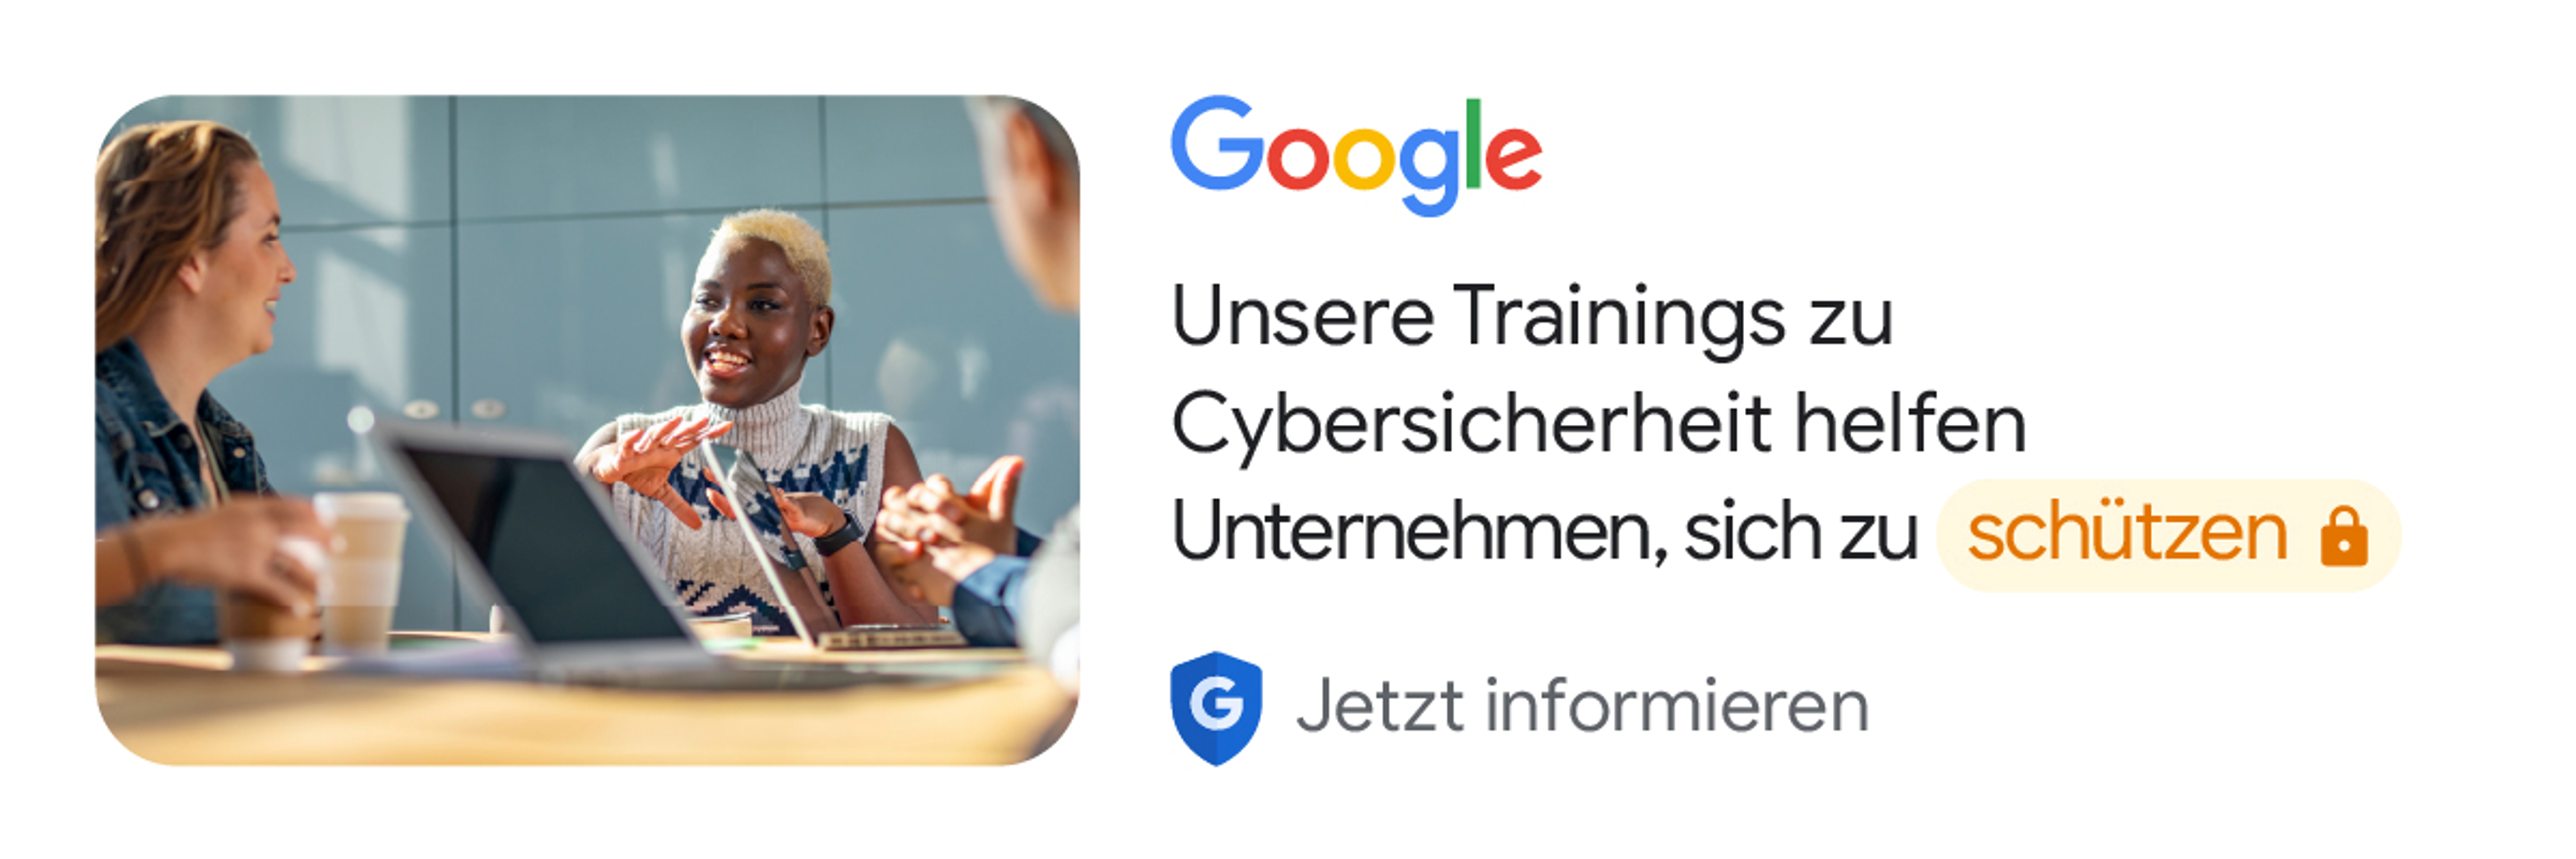 Google. Unsere Trainings zu Cybersicherheit helfen Unternehmen, sich zu schützen. Jetzt informieren.